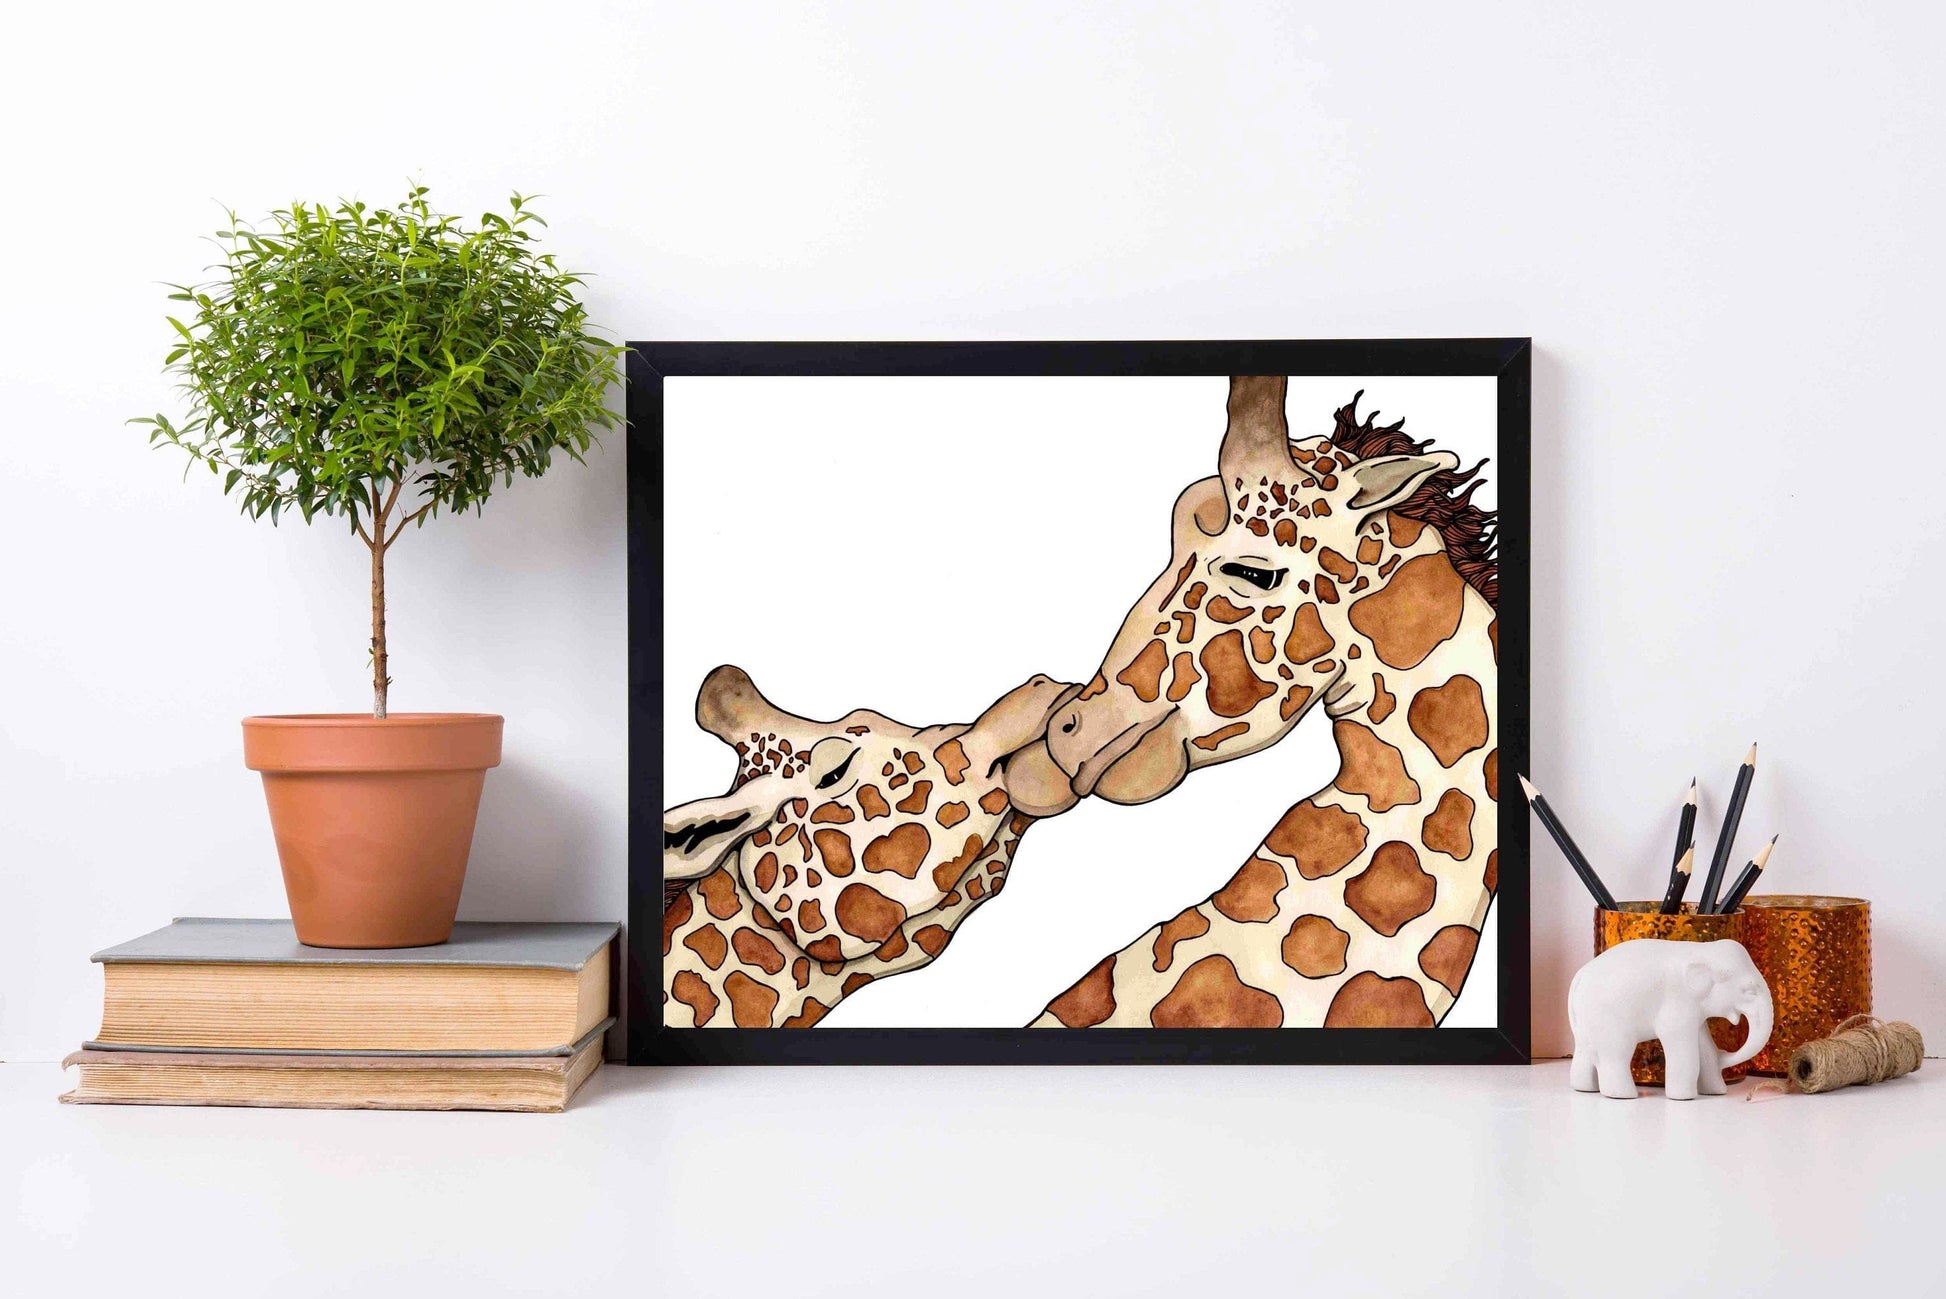 PinkPolish Design Art Prints "Giraffe Love" Watercolor Painting: Art Print